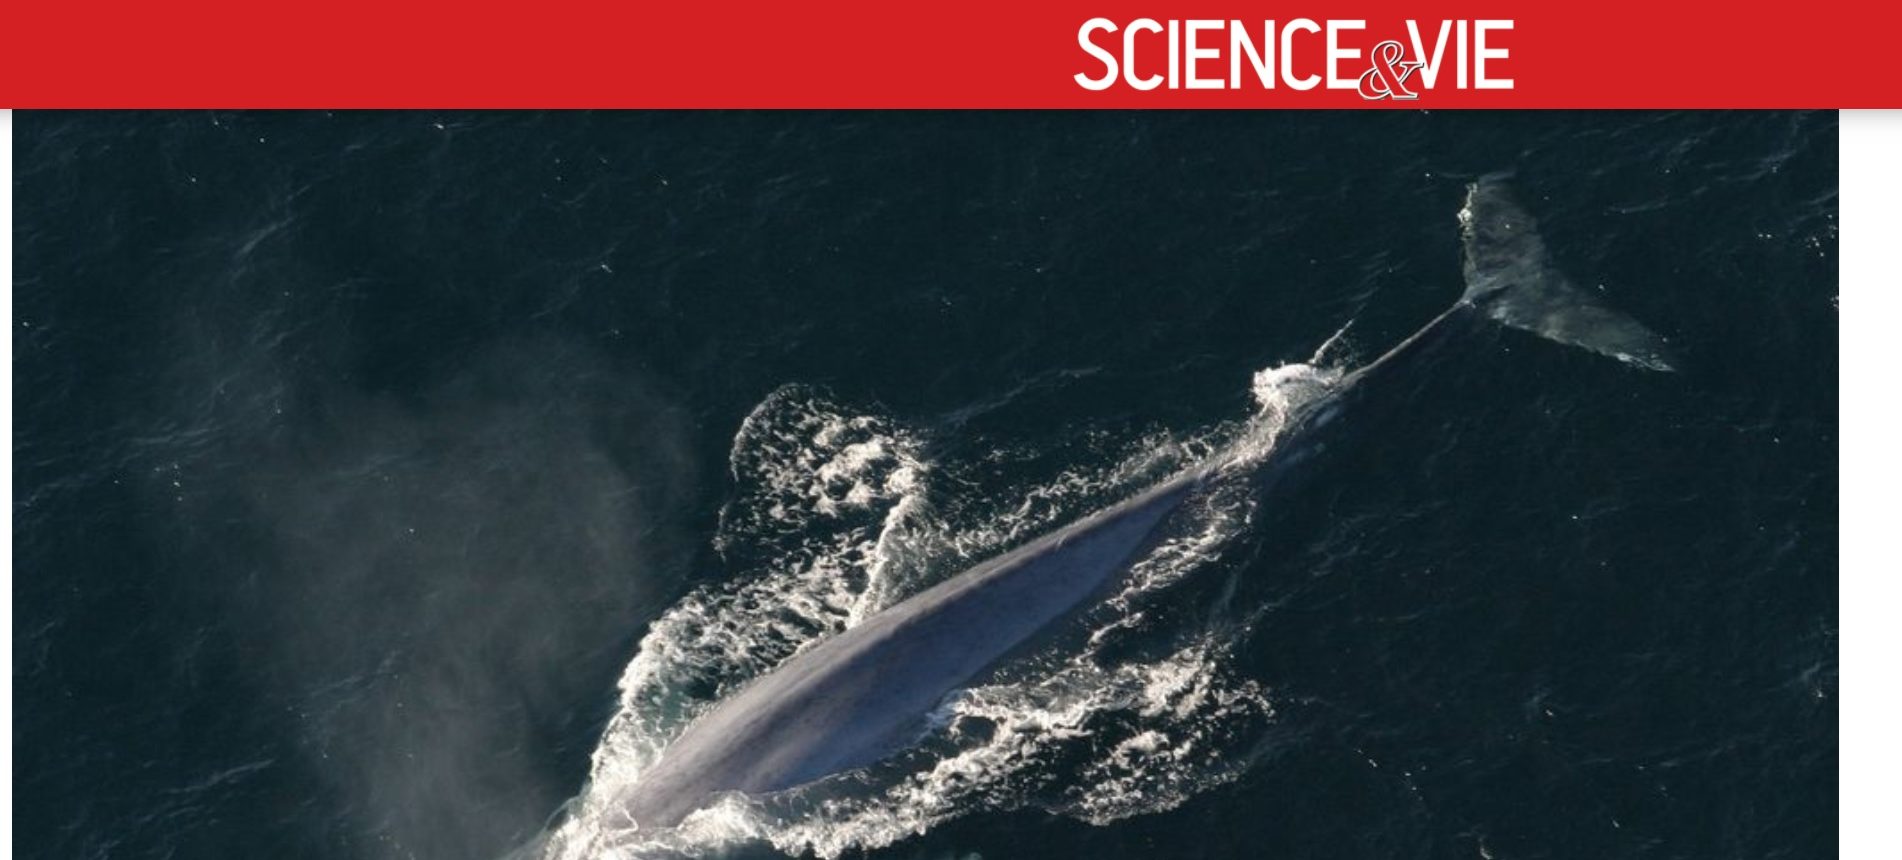 La baleine qui chante faux existe-t-elle vraiment ?